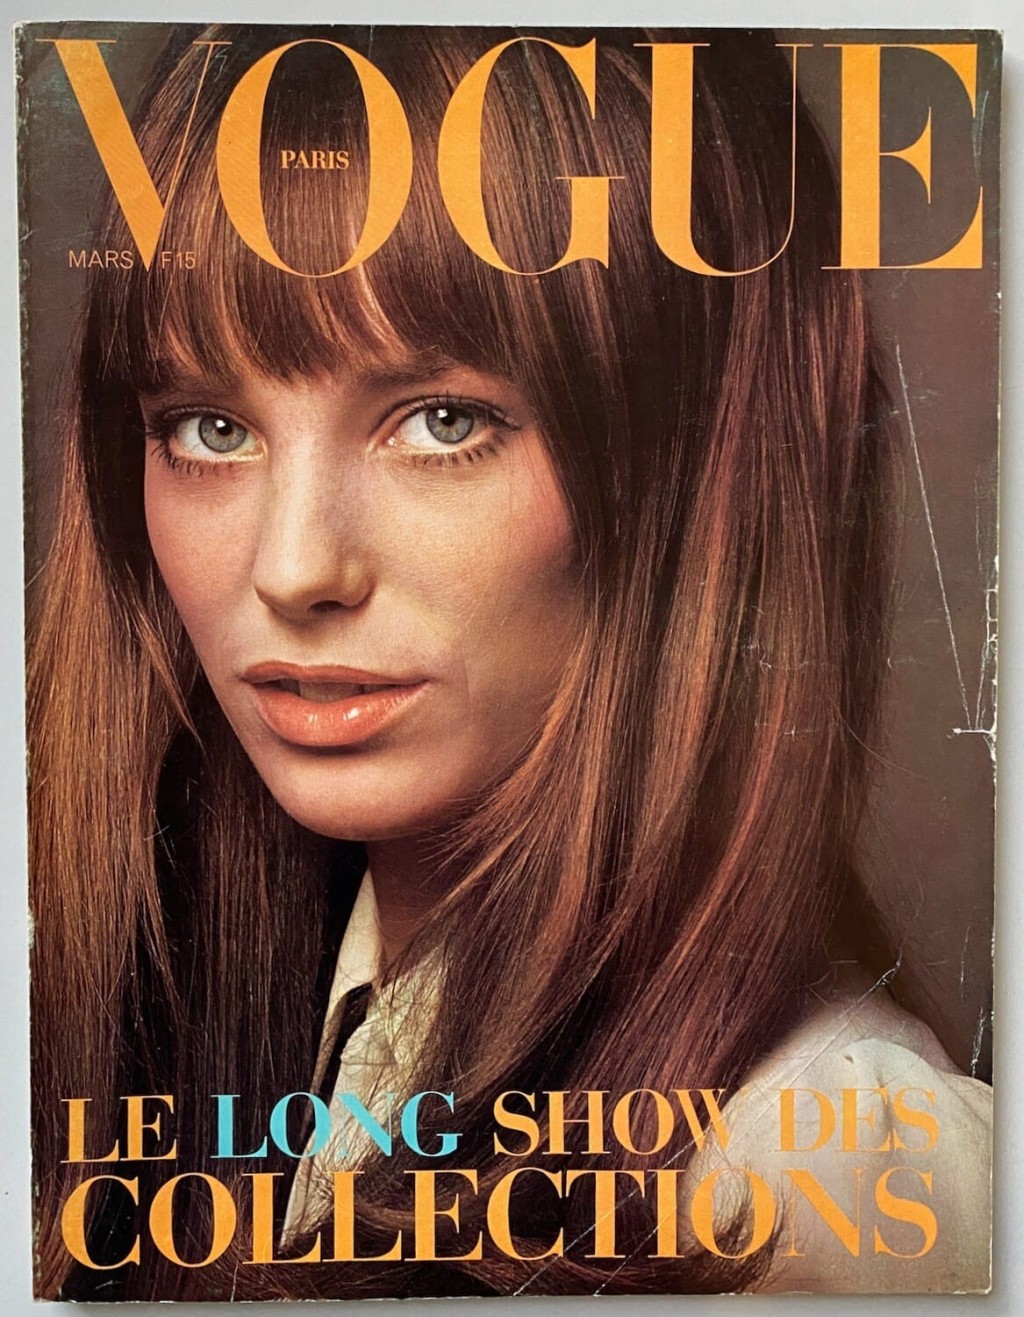 衣着趋时有型的Jane亦是60年代有名的fashion icon，经常登上时尚杂志封面。